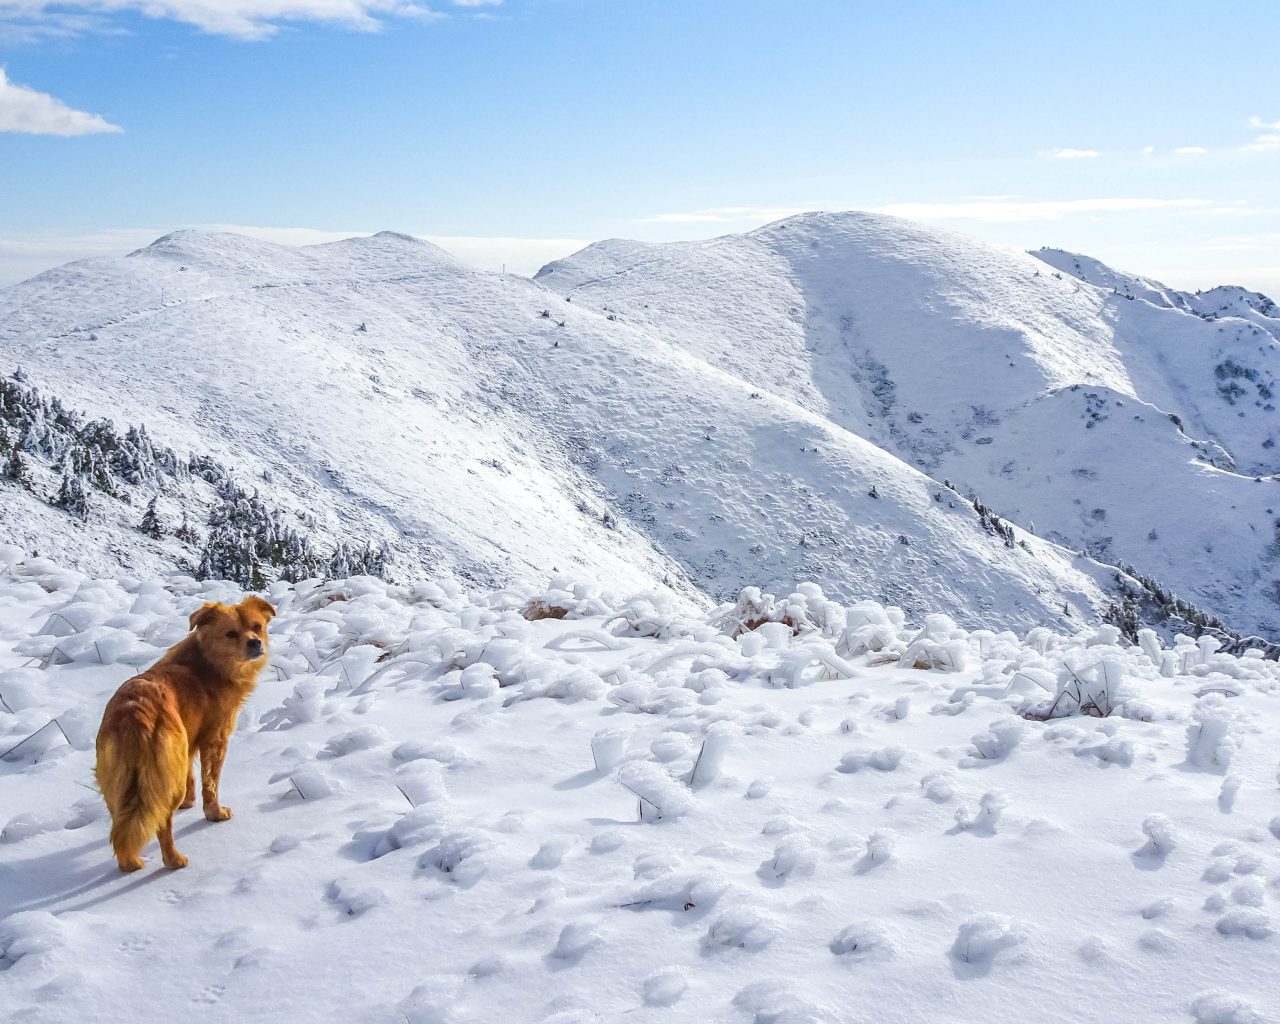 Berg-met-sneeuw-en-oranje-hond